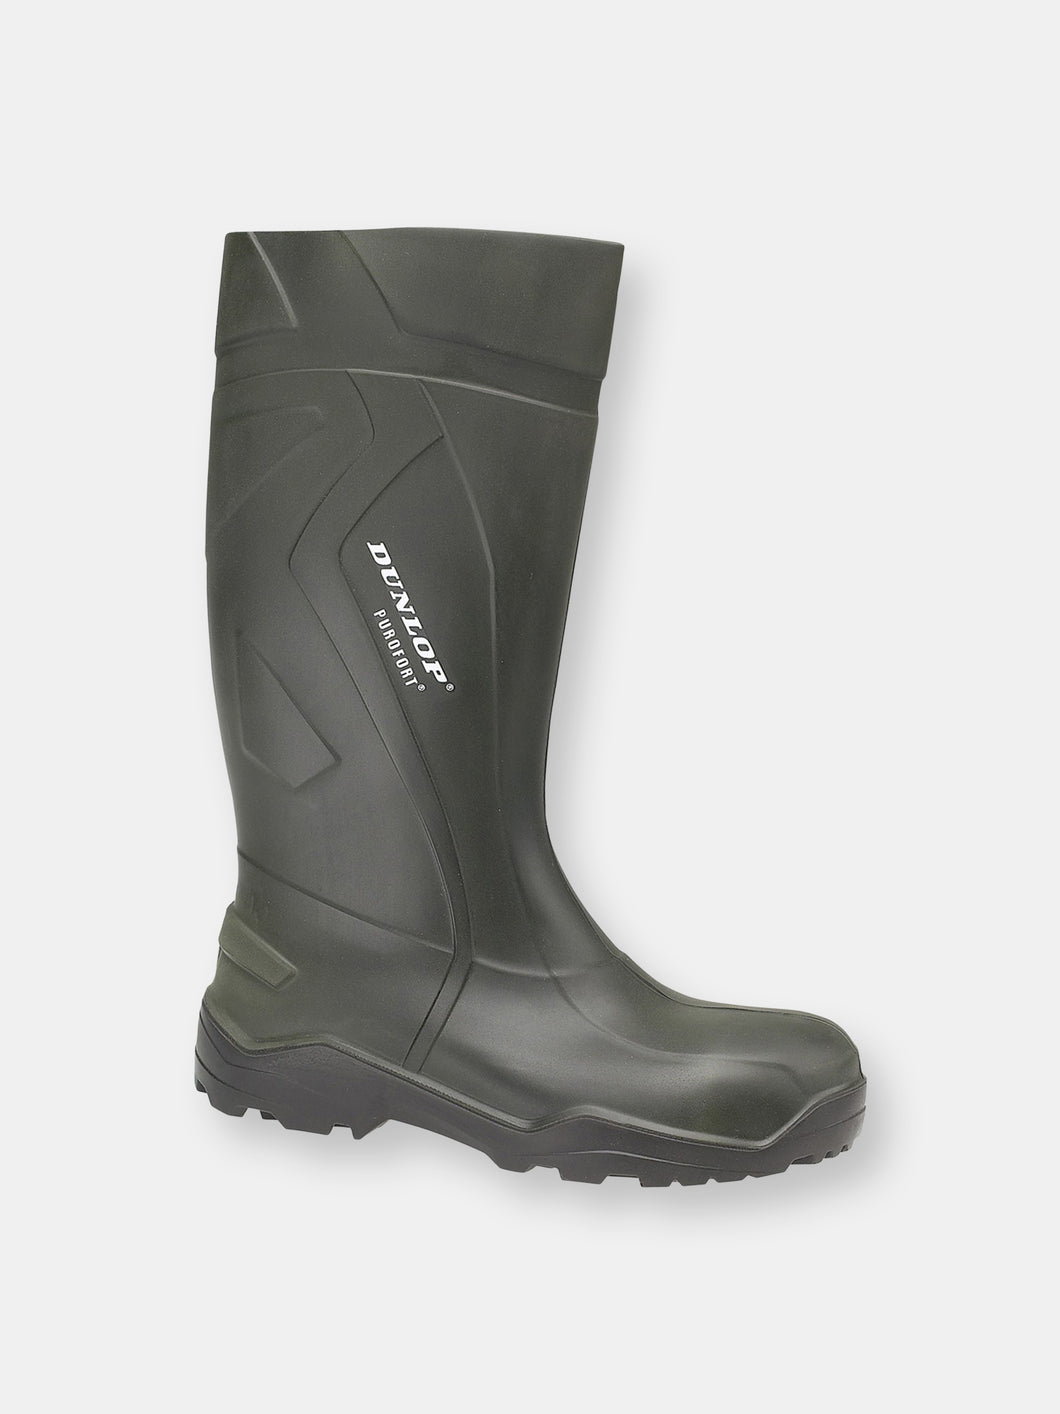 Purofort+ D760943 Wellington Boots / Mens Rain Boots - Green